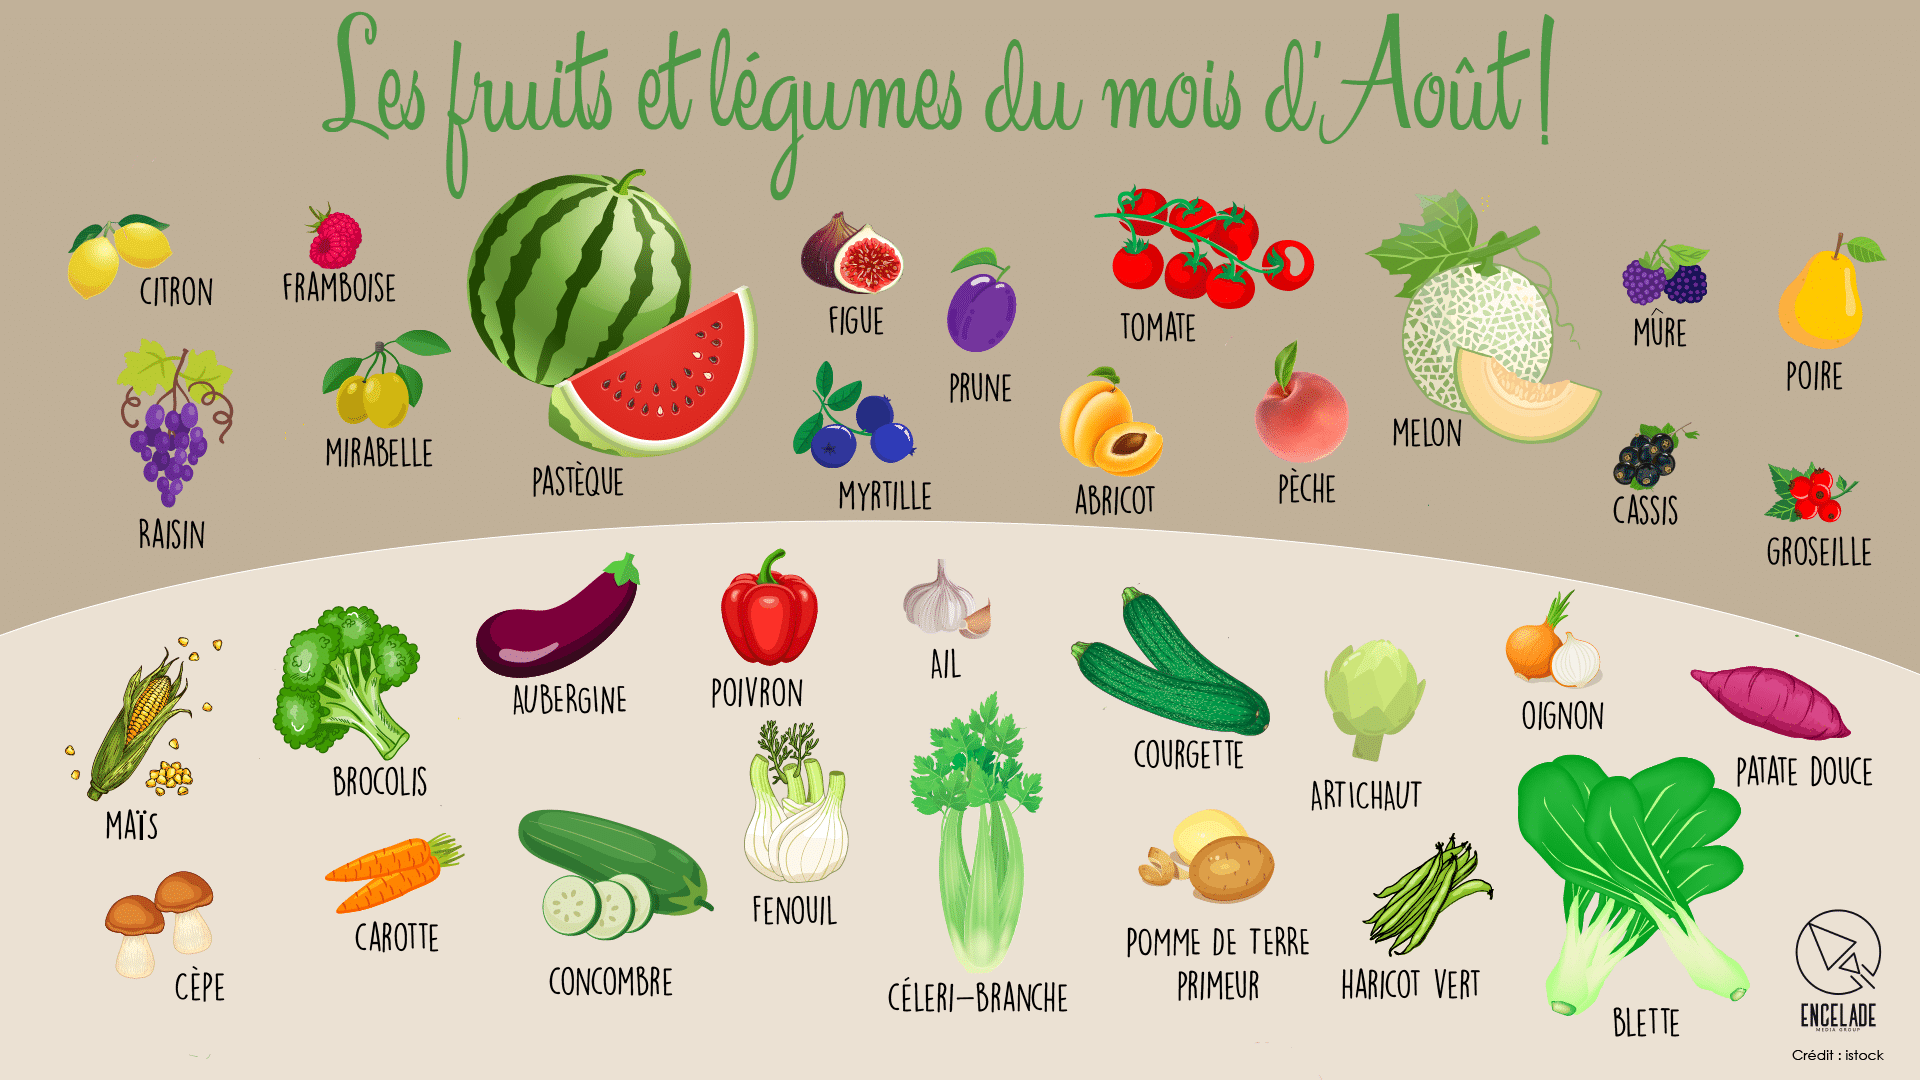 Frutas y legumbres Août